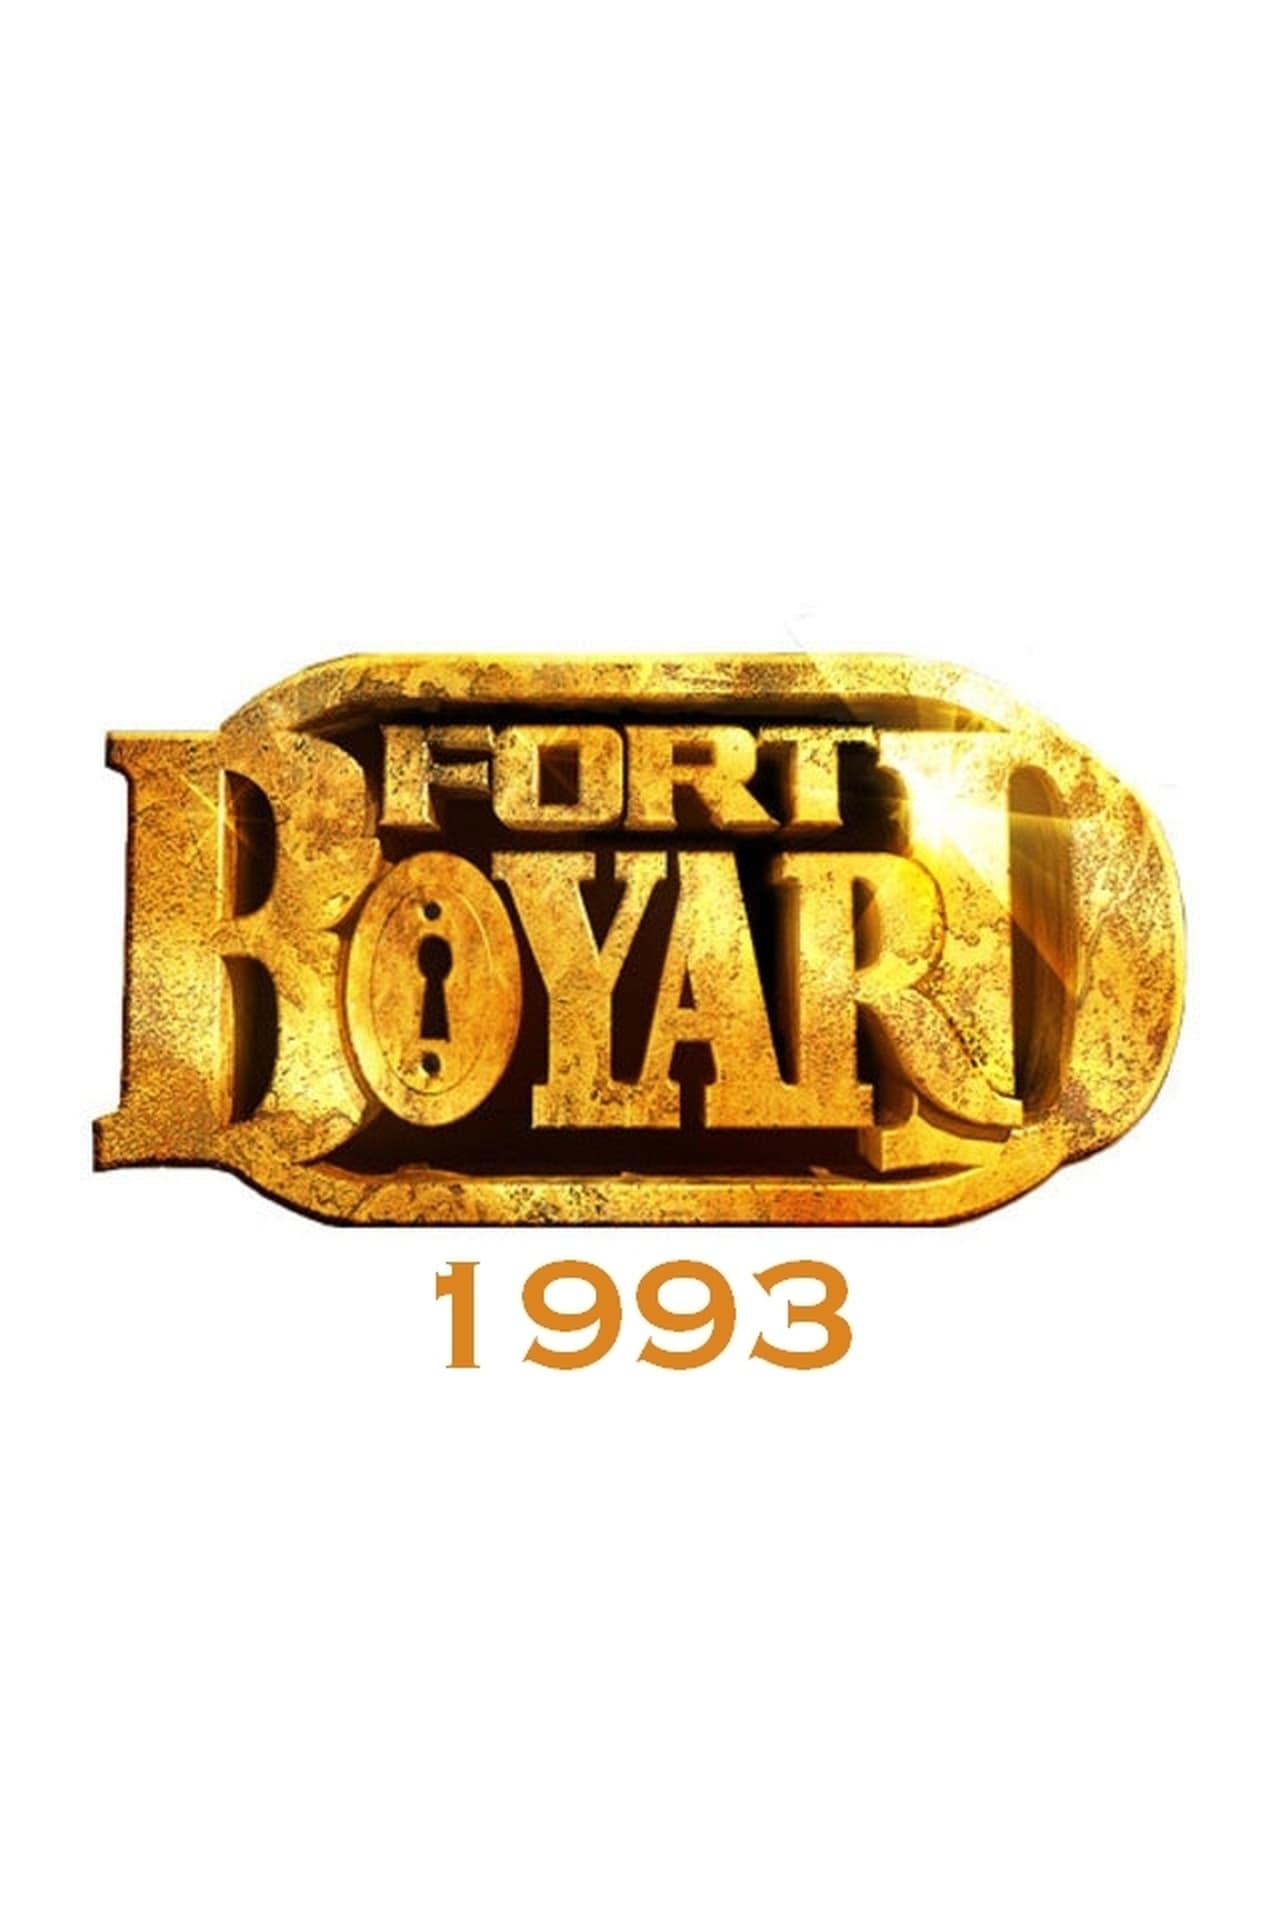 Fort Boyard Season 4